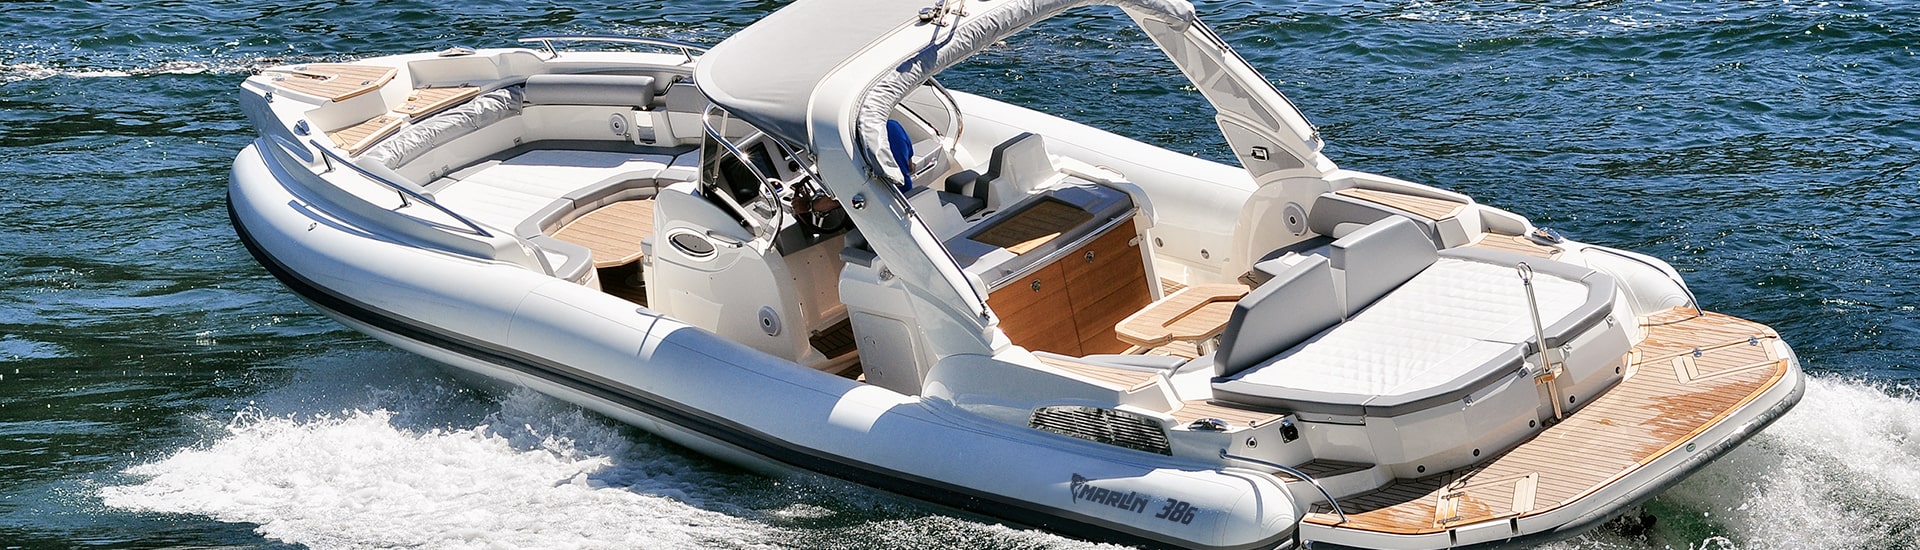 Marlin Boat - Inboard model  386